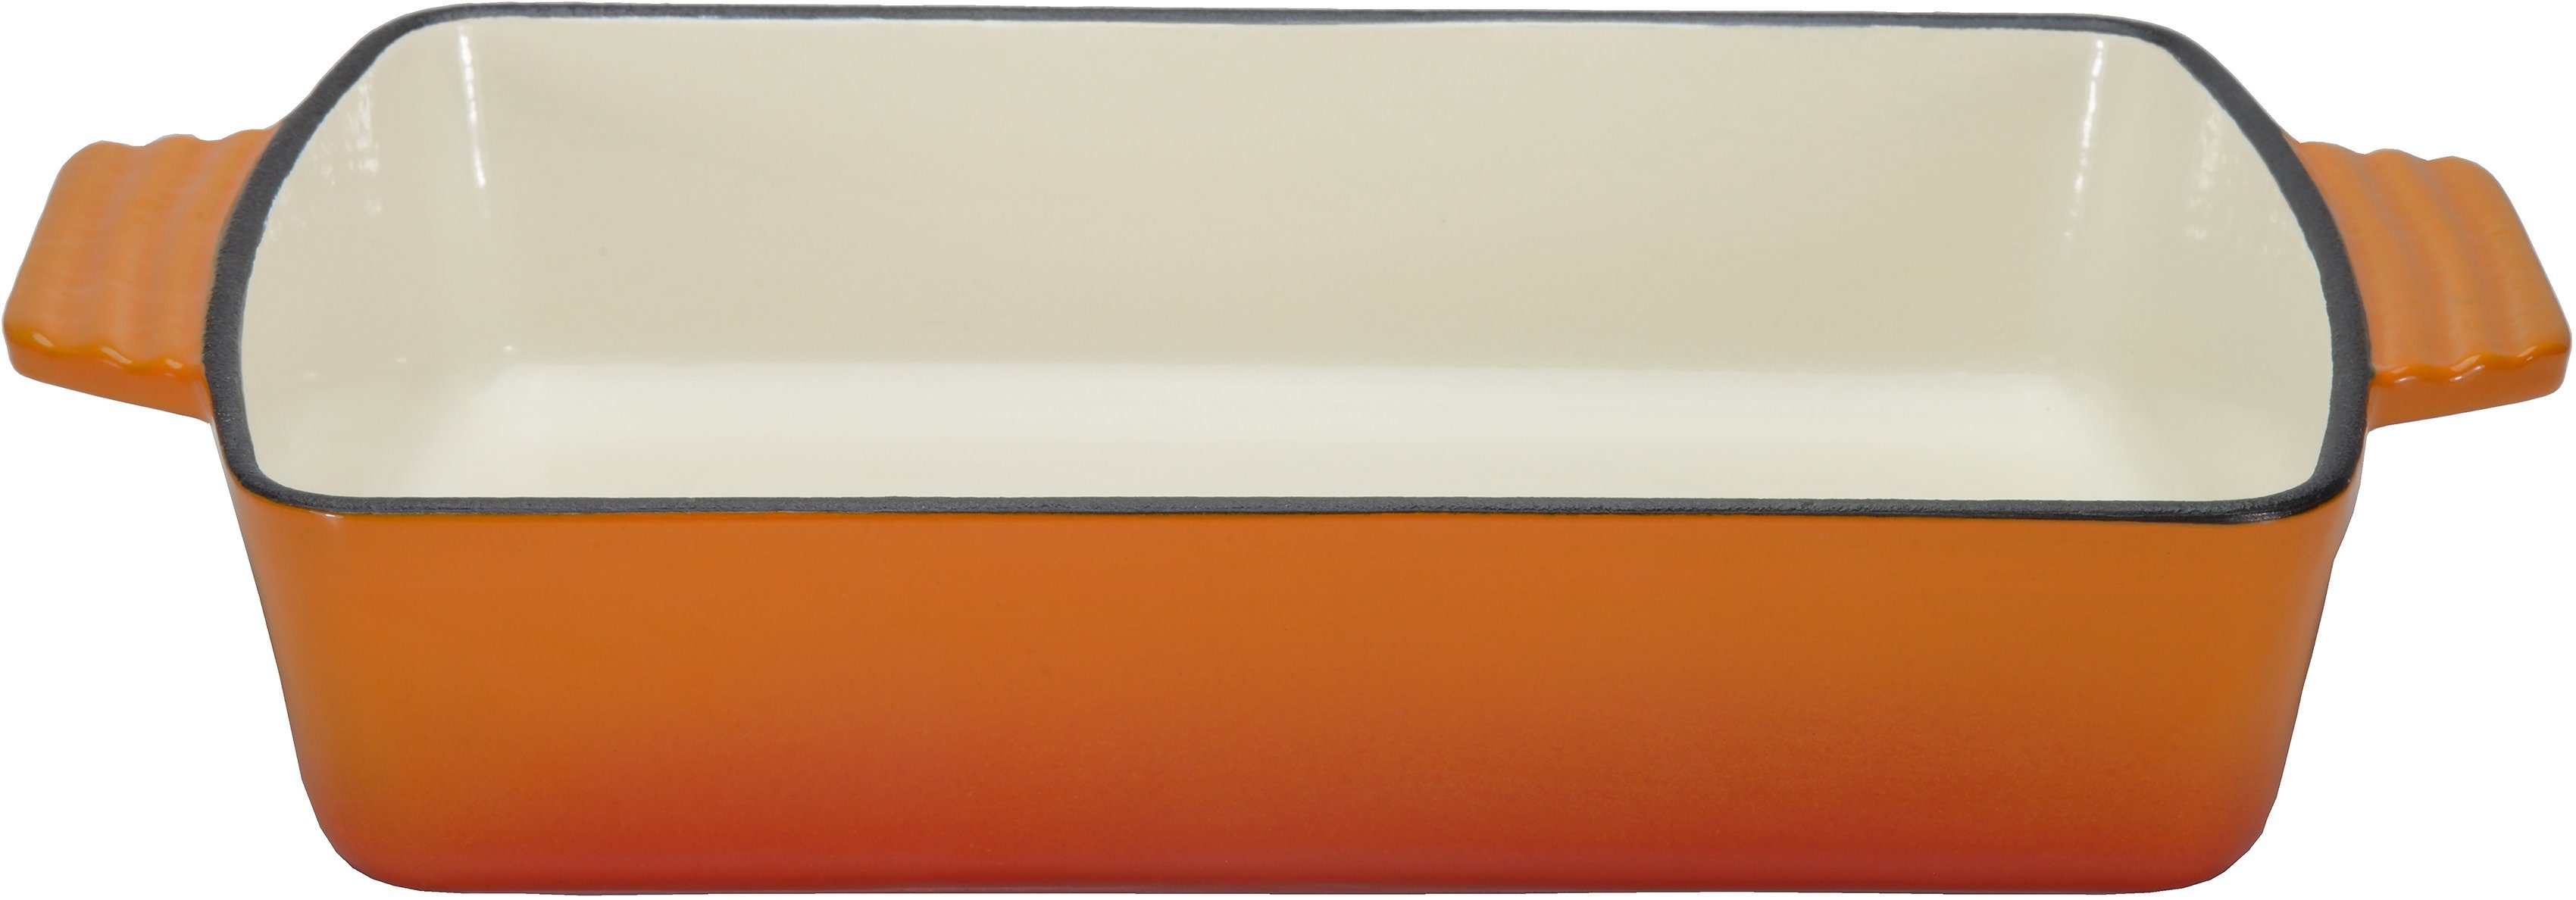 GSW Auflaufform Orange Shadow, Gusseisen, 3,8 Liter, für gleichmäßige Wärmeverteilung und -speicherung